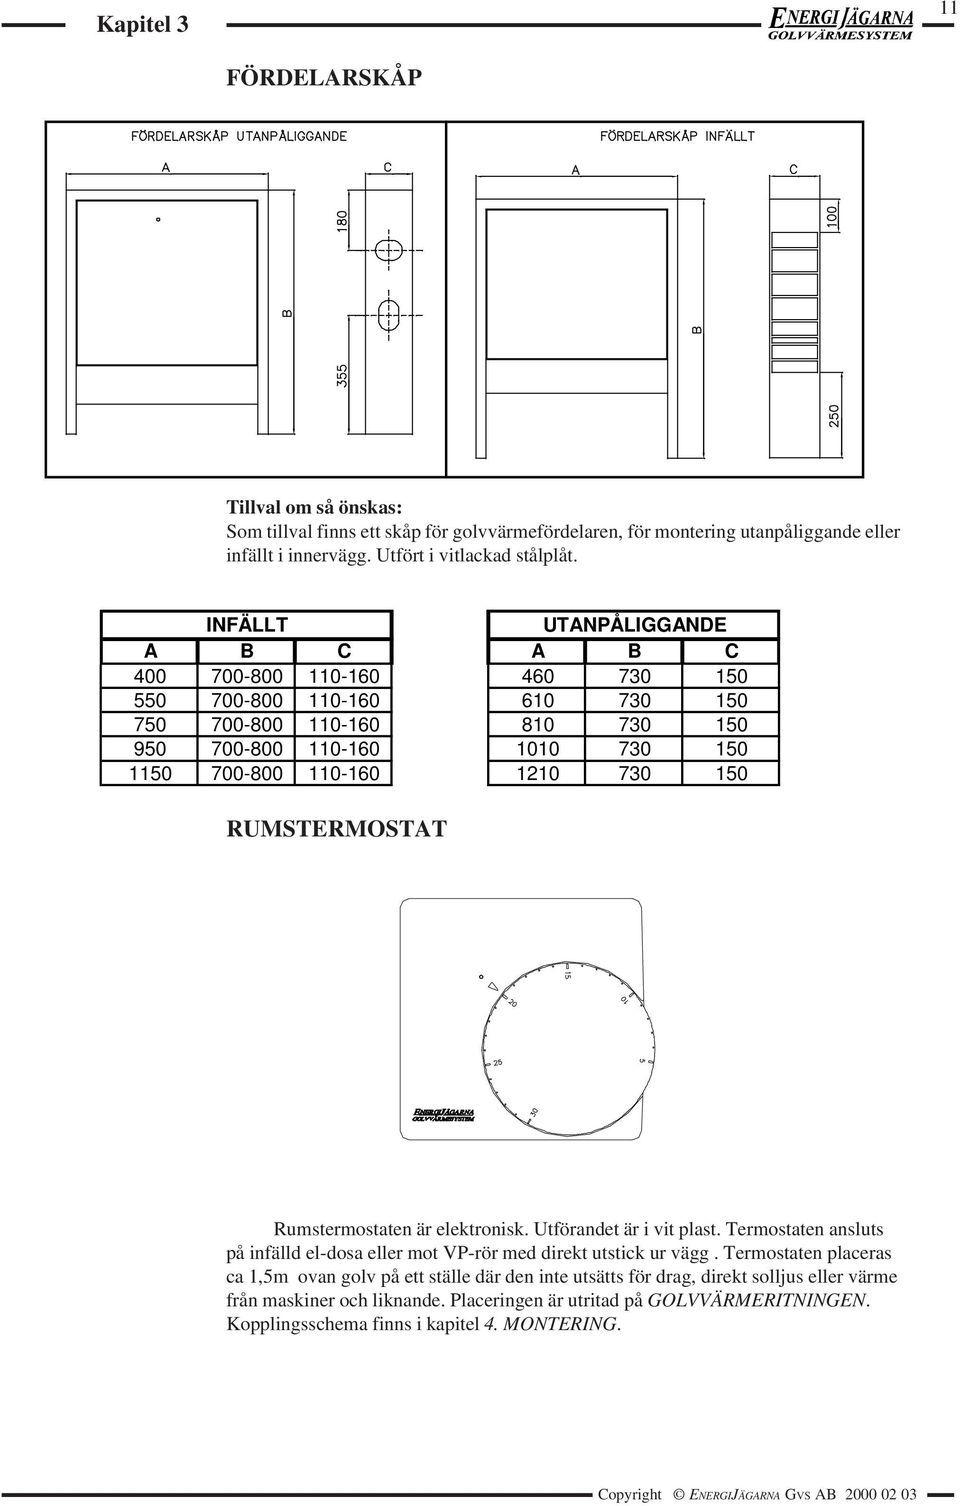 RUMSTERMOSTAT Rumstermostaten är elektronisk. Utförandet är i vit plast. Termostaten ansluts på infälld el-dosa eller mot VP-rör med direkt utstick ur vägg.